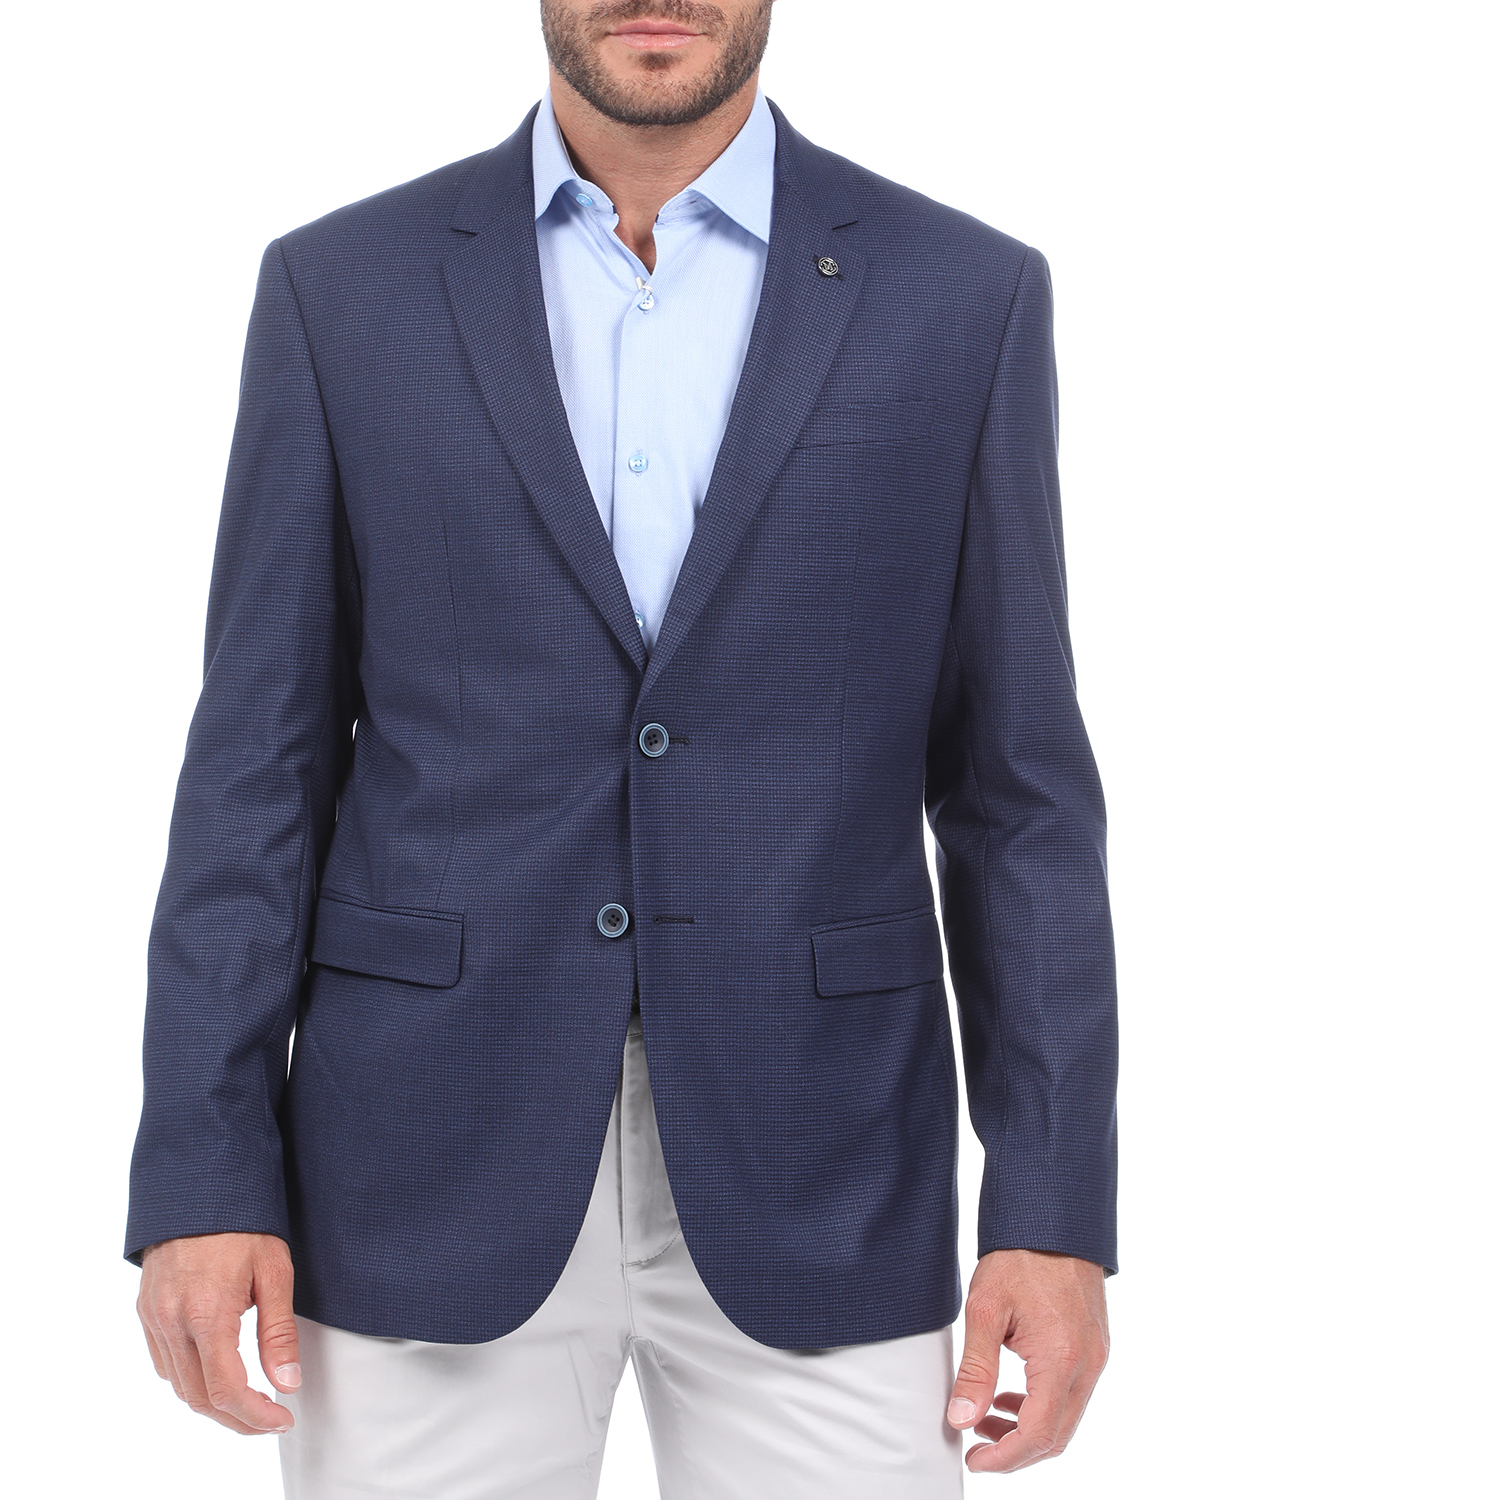 Ανδρικά/Ρούχα/Πανωφόρια/Σακάκια MARTIN & CO - Ανδρικό σακάκι blazer MARTIN & CO CMFRT Stretch μπλε